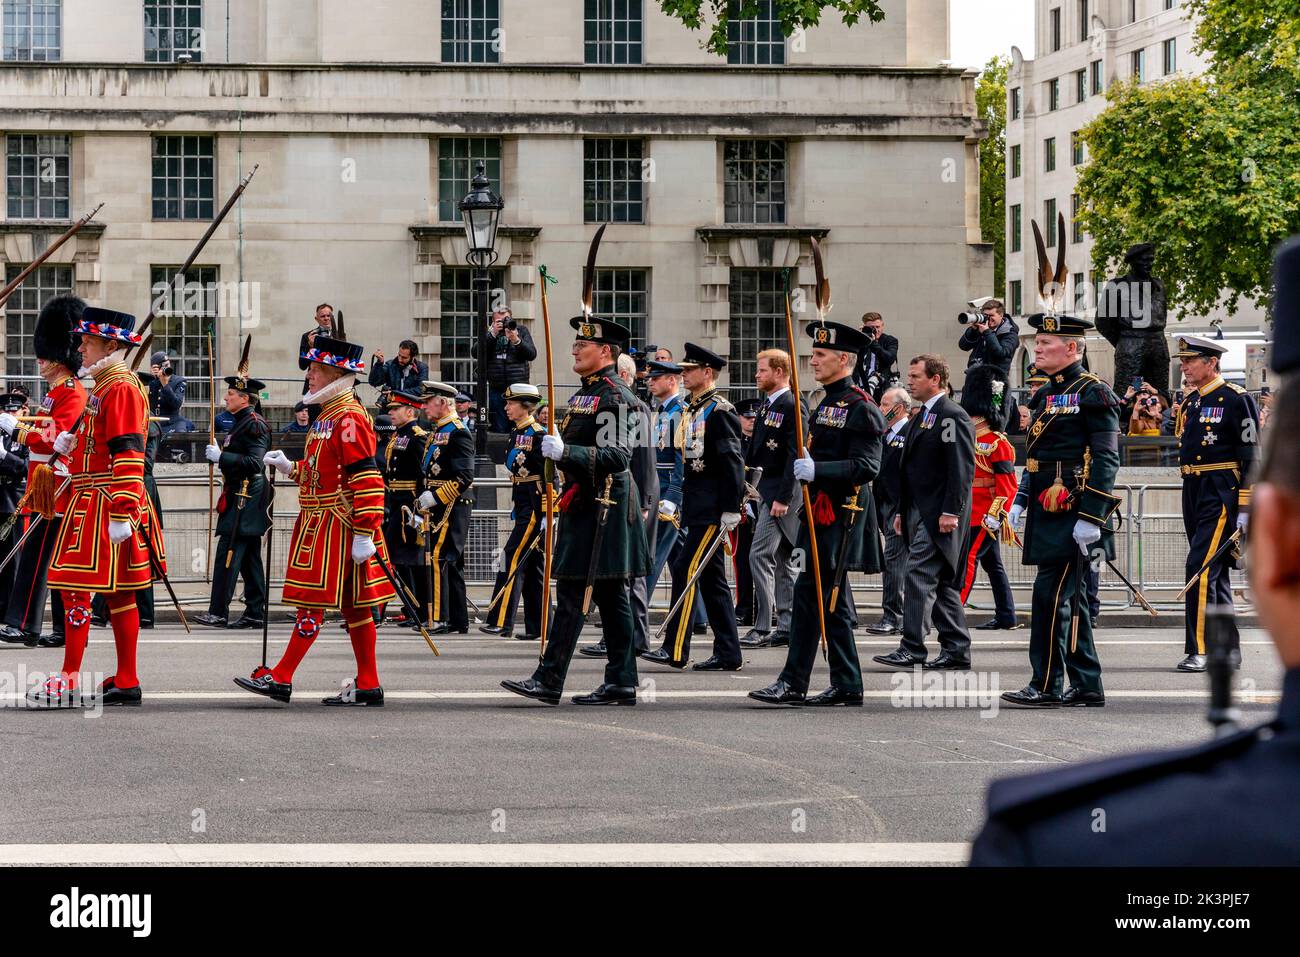 Mitglieder der britischen Königsfamilie laufen hinter dem Sarg von Königin Elizabeth II., während die Beerdigungsprozession Whitehall, London, Großbritannien, hinauffährt. Stockfoto